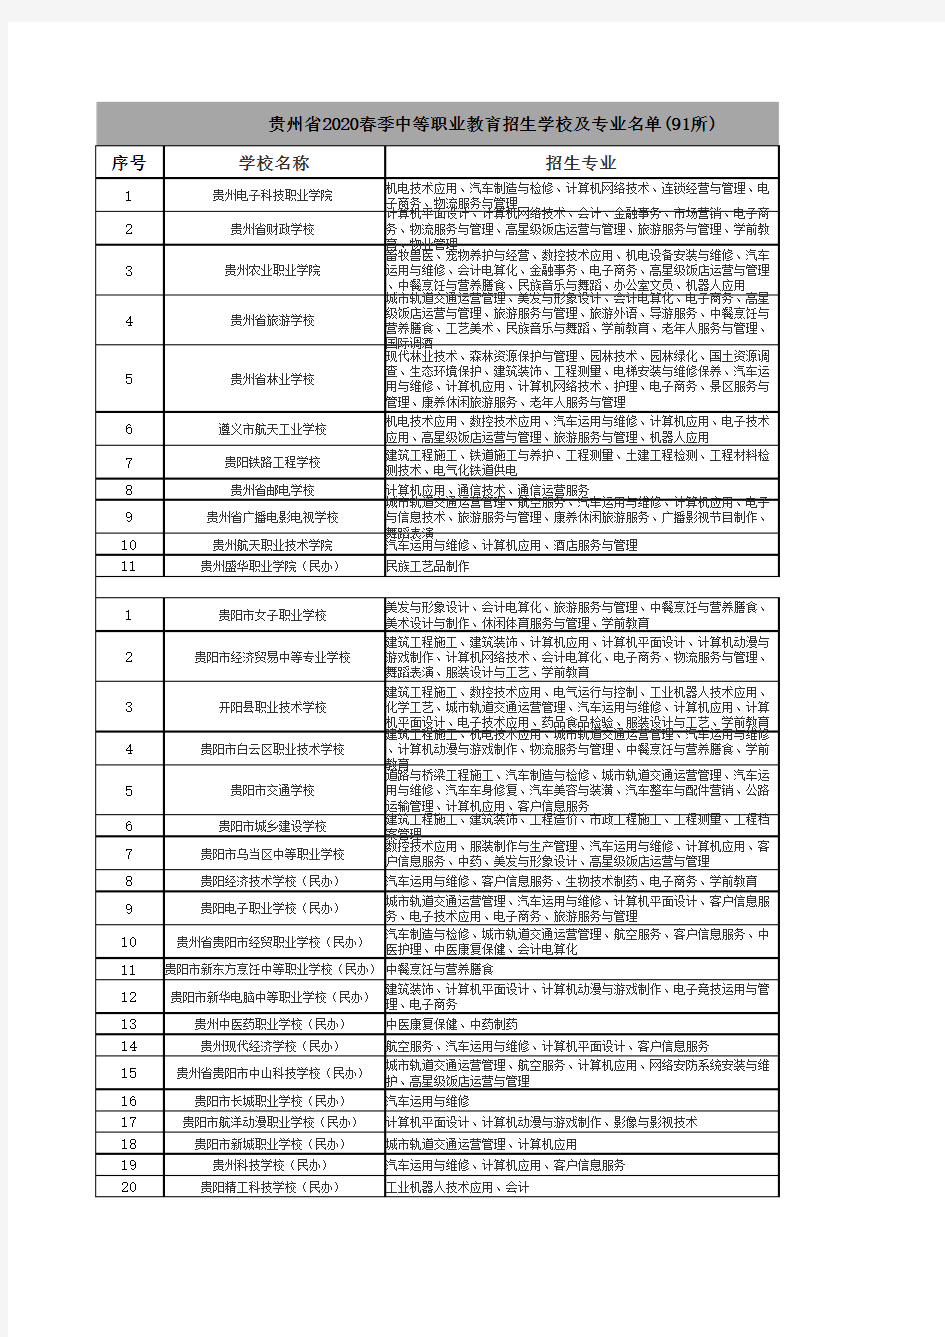 贵州省2020春季中等职业教育招生学校及专业名单(91所)